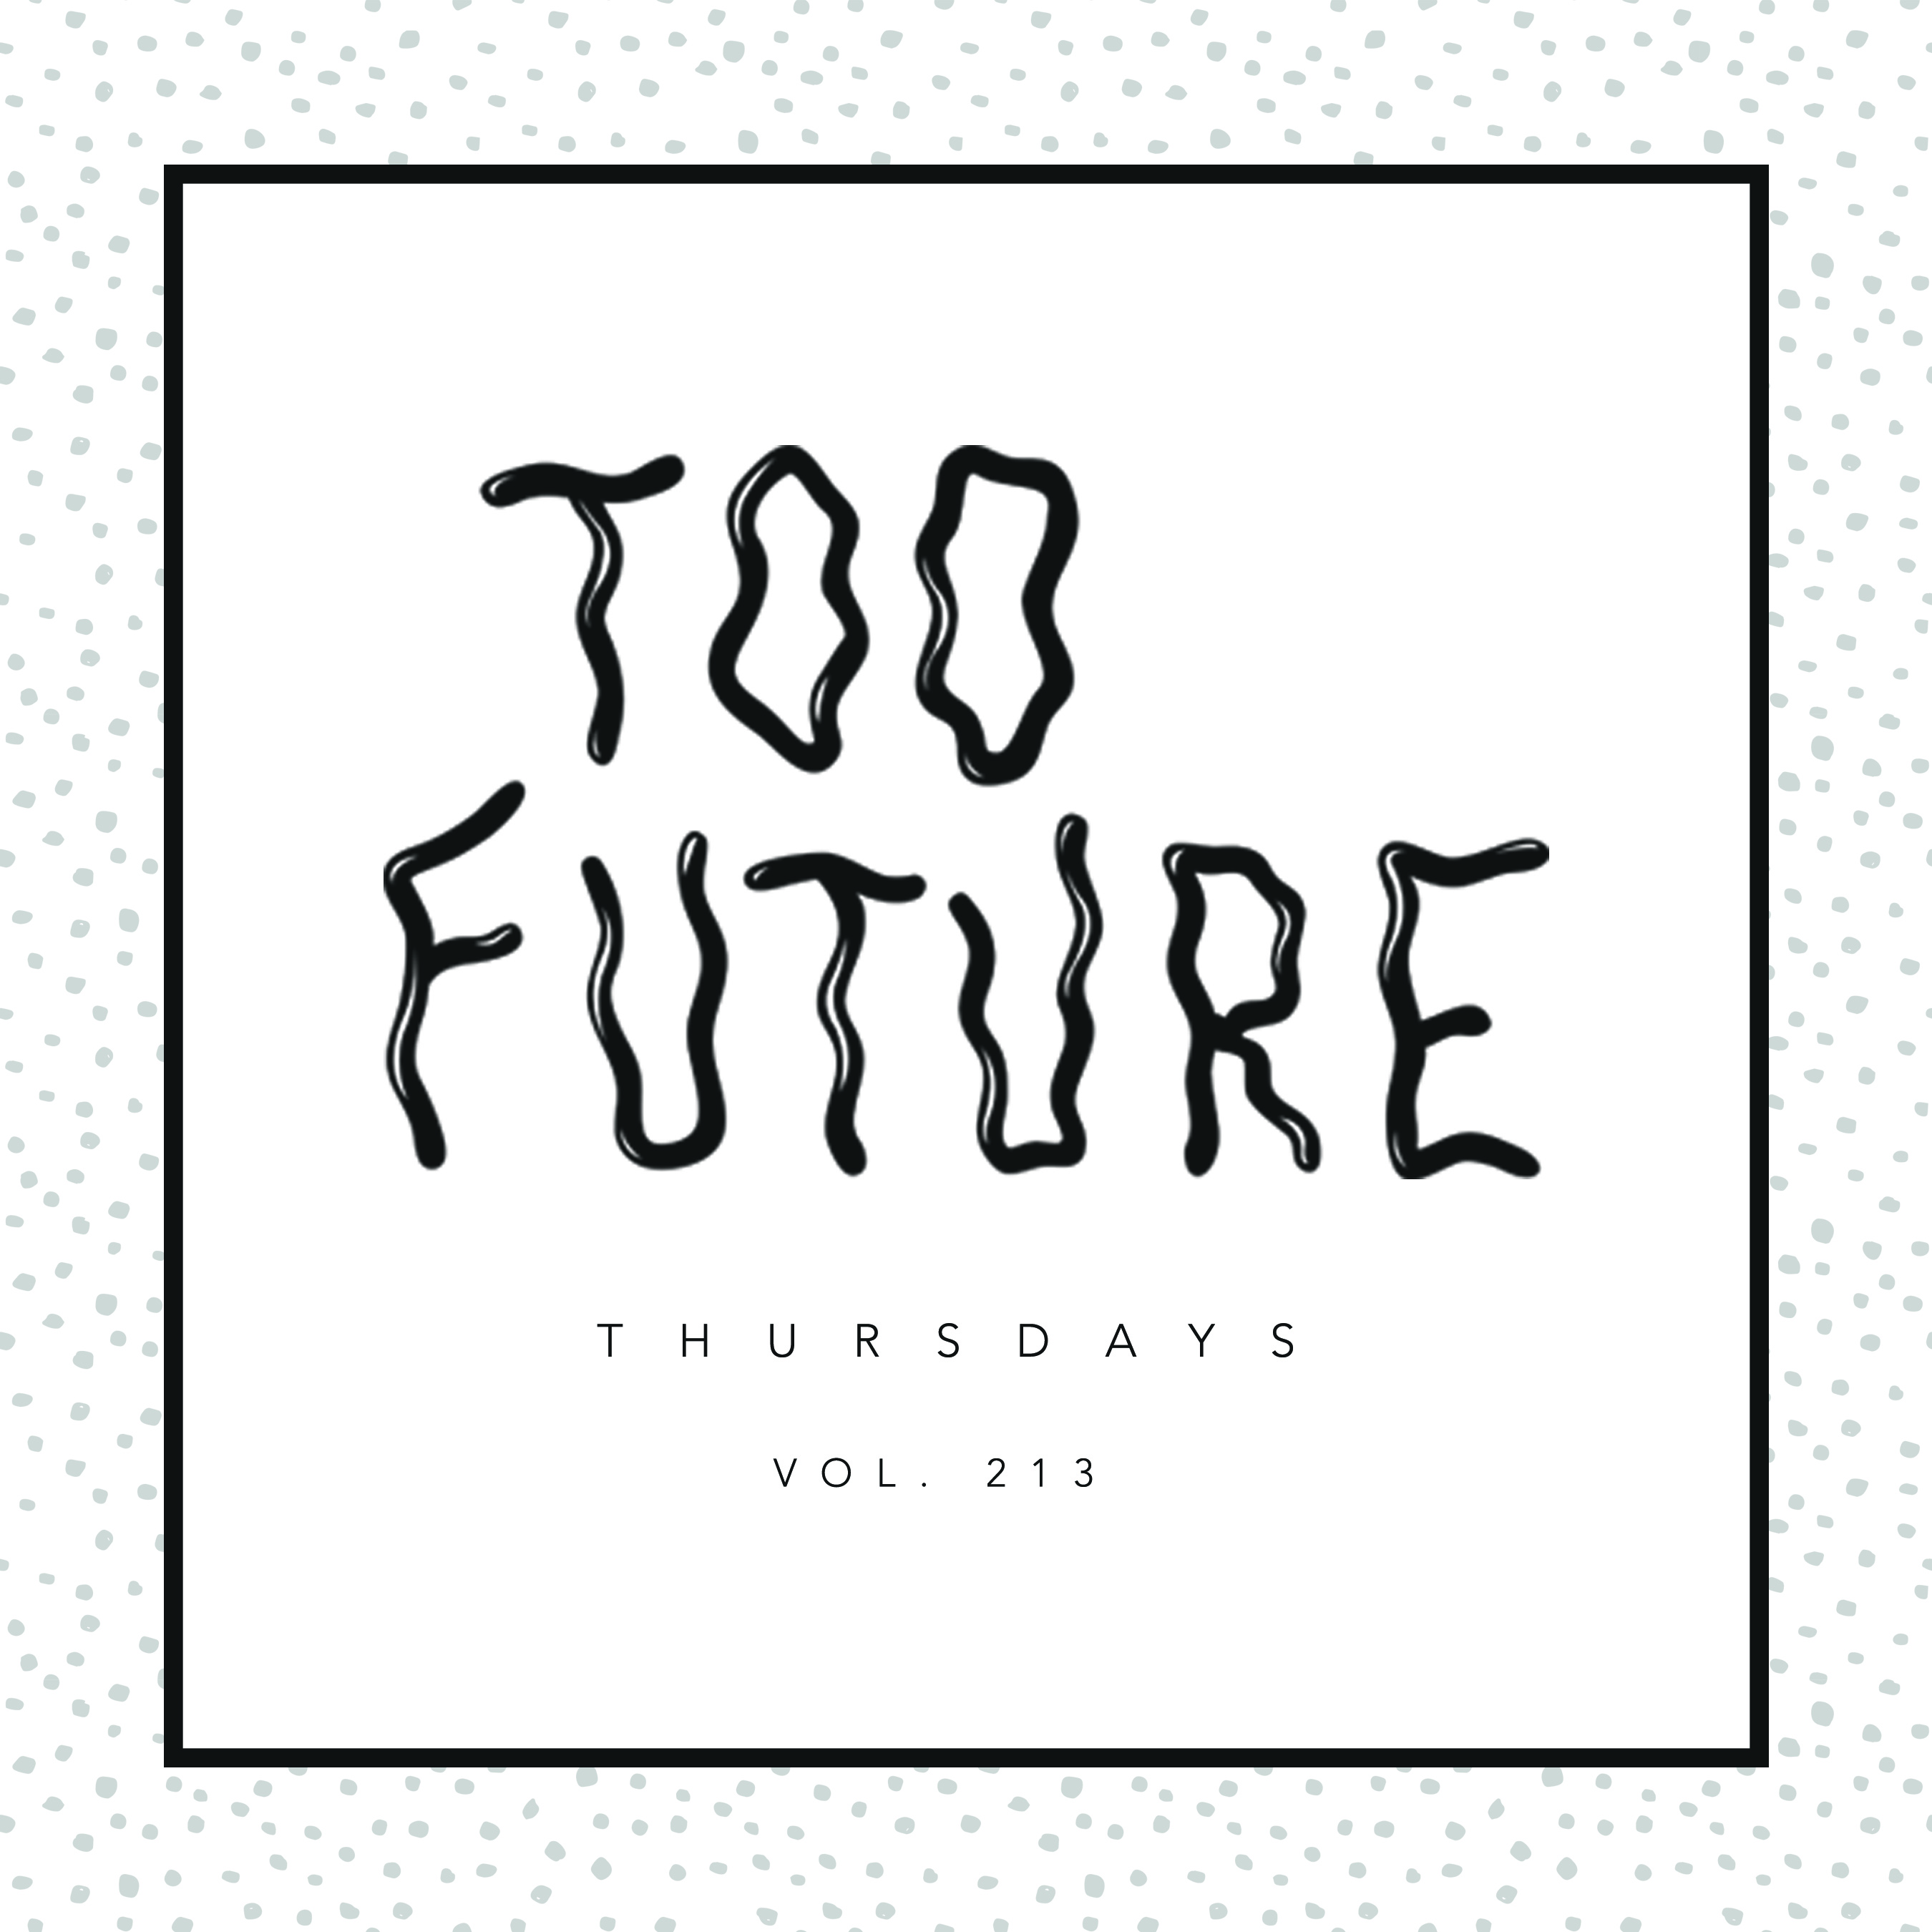 too-future-thursdays-vol-213